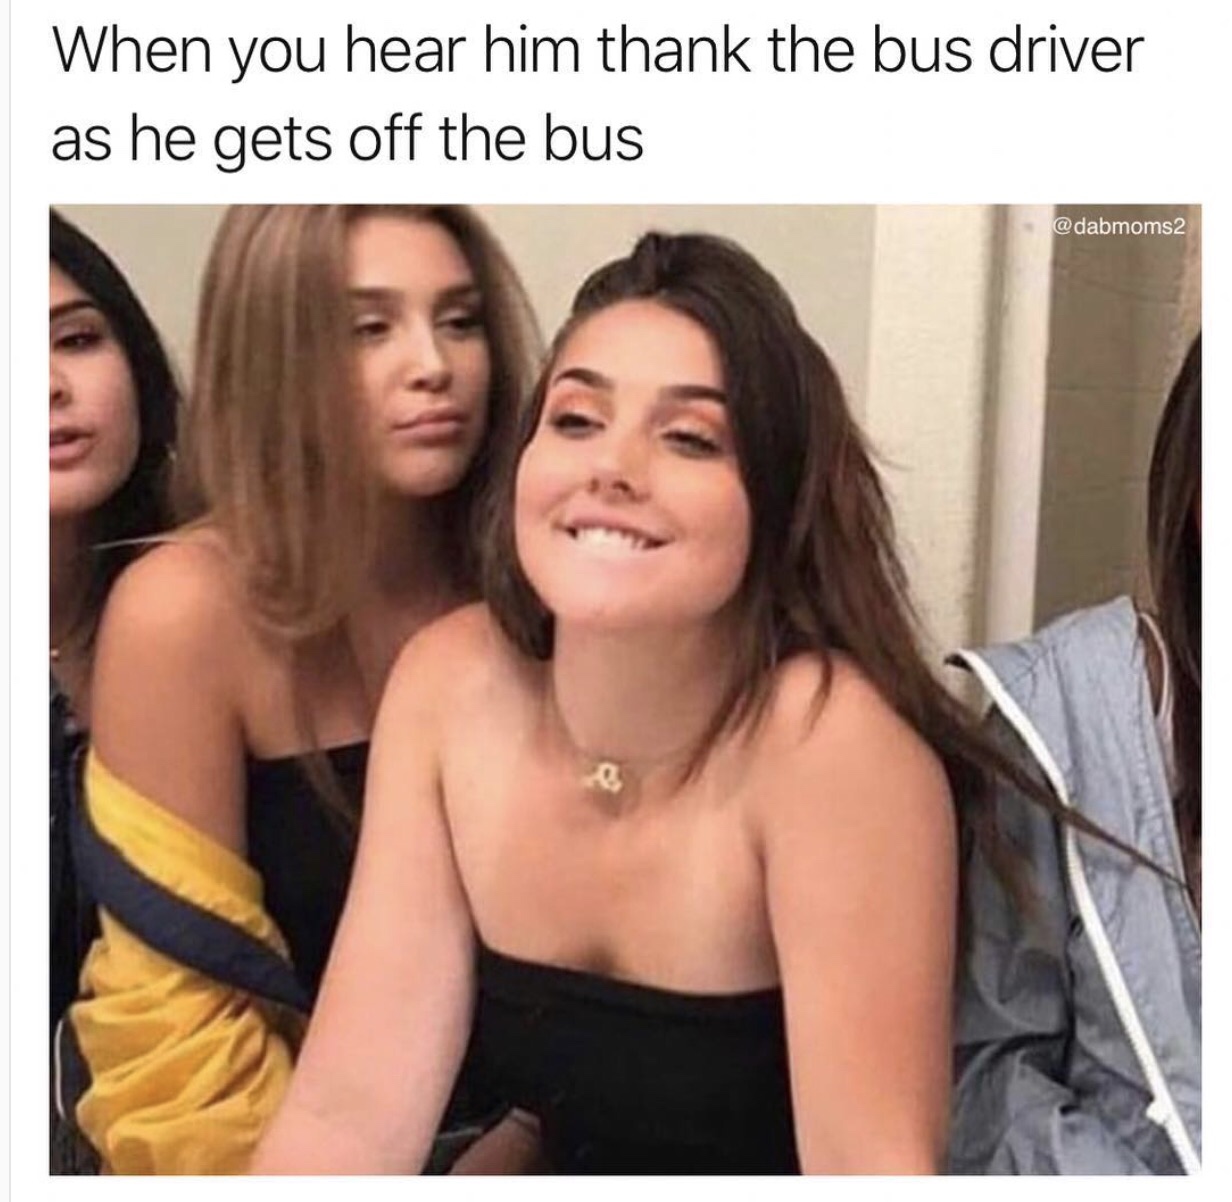 memes - thank the bus driver meme - When you hear him thank the bus driver as he gets off the bus